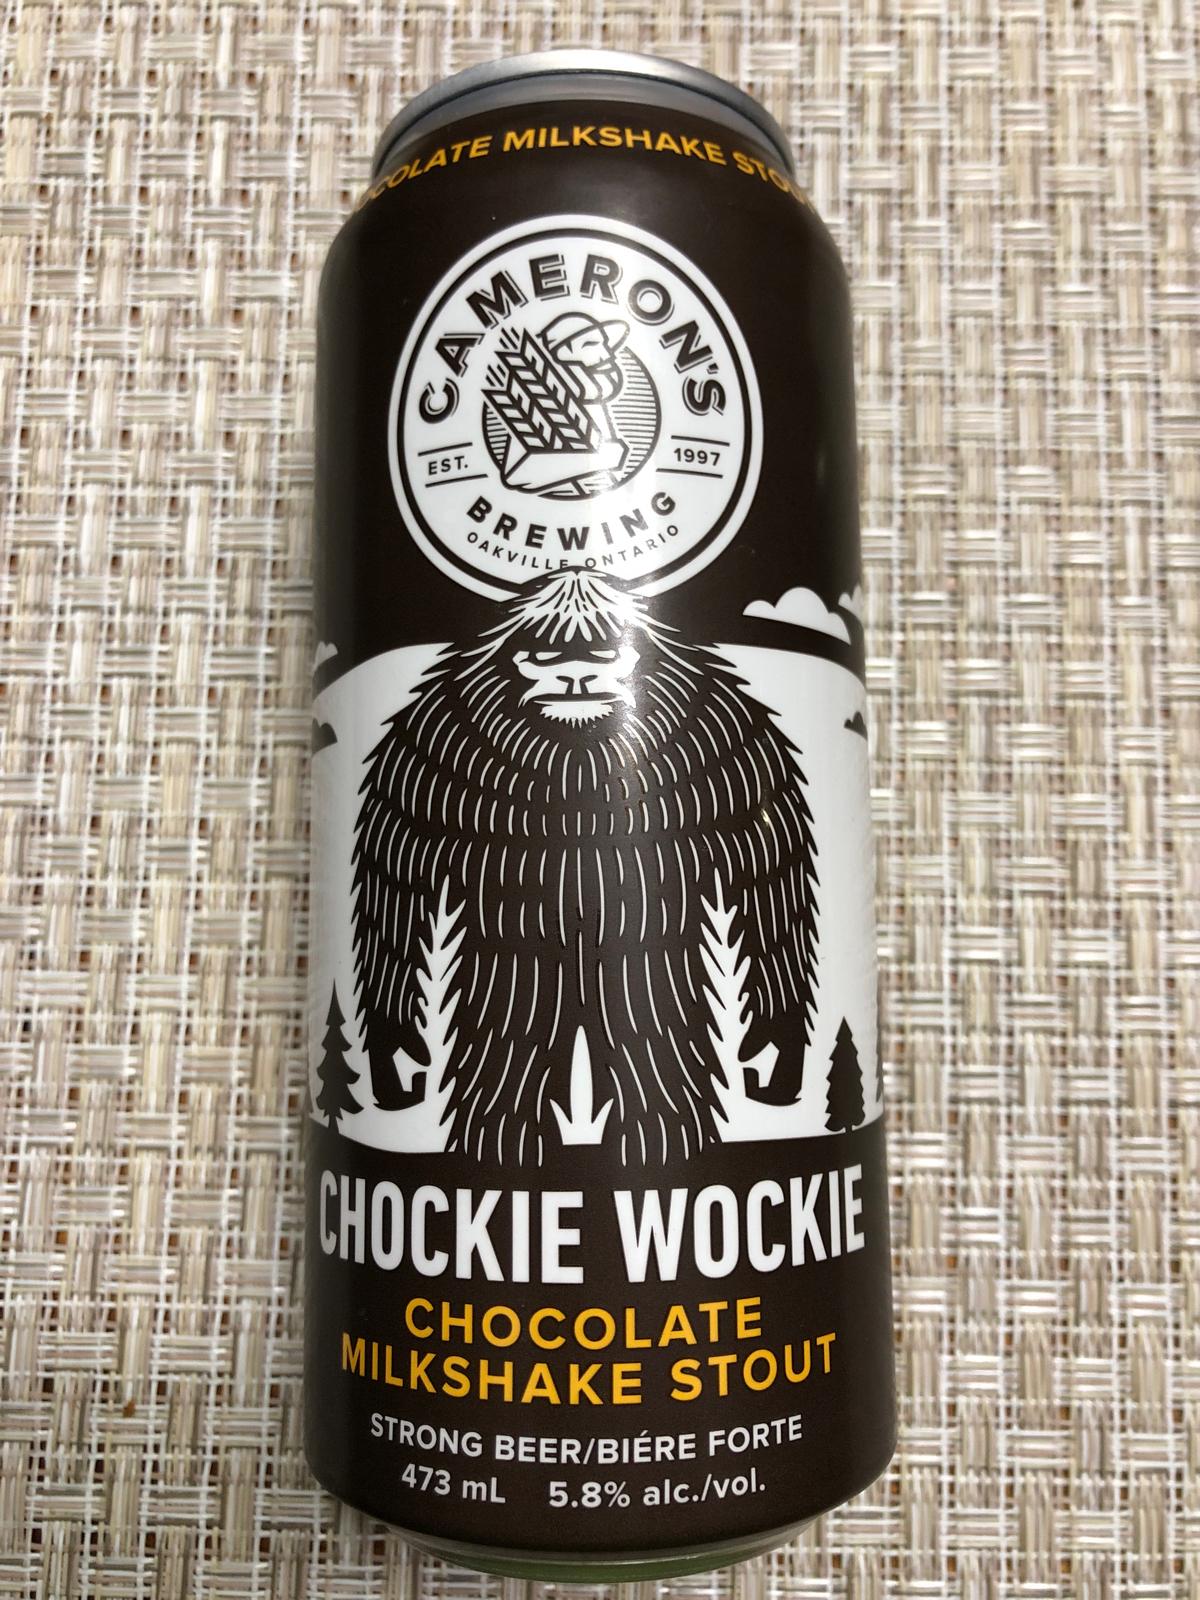 Chockie Wockie